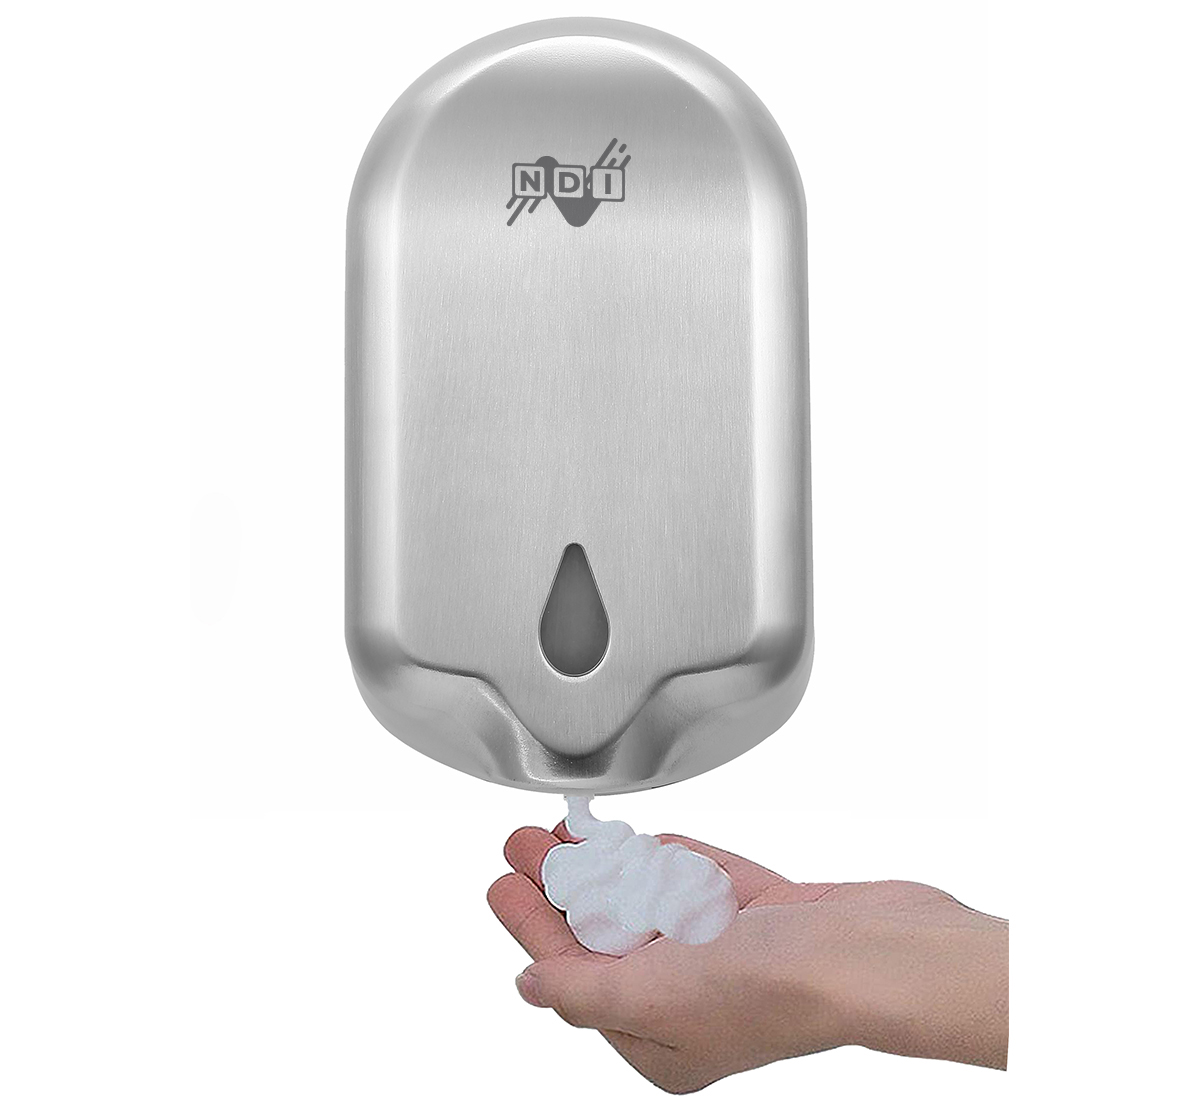 Soap/Sanitizer Dispenser